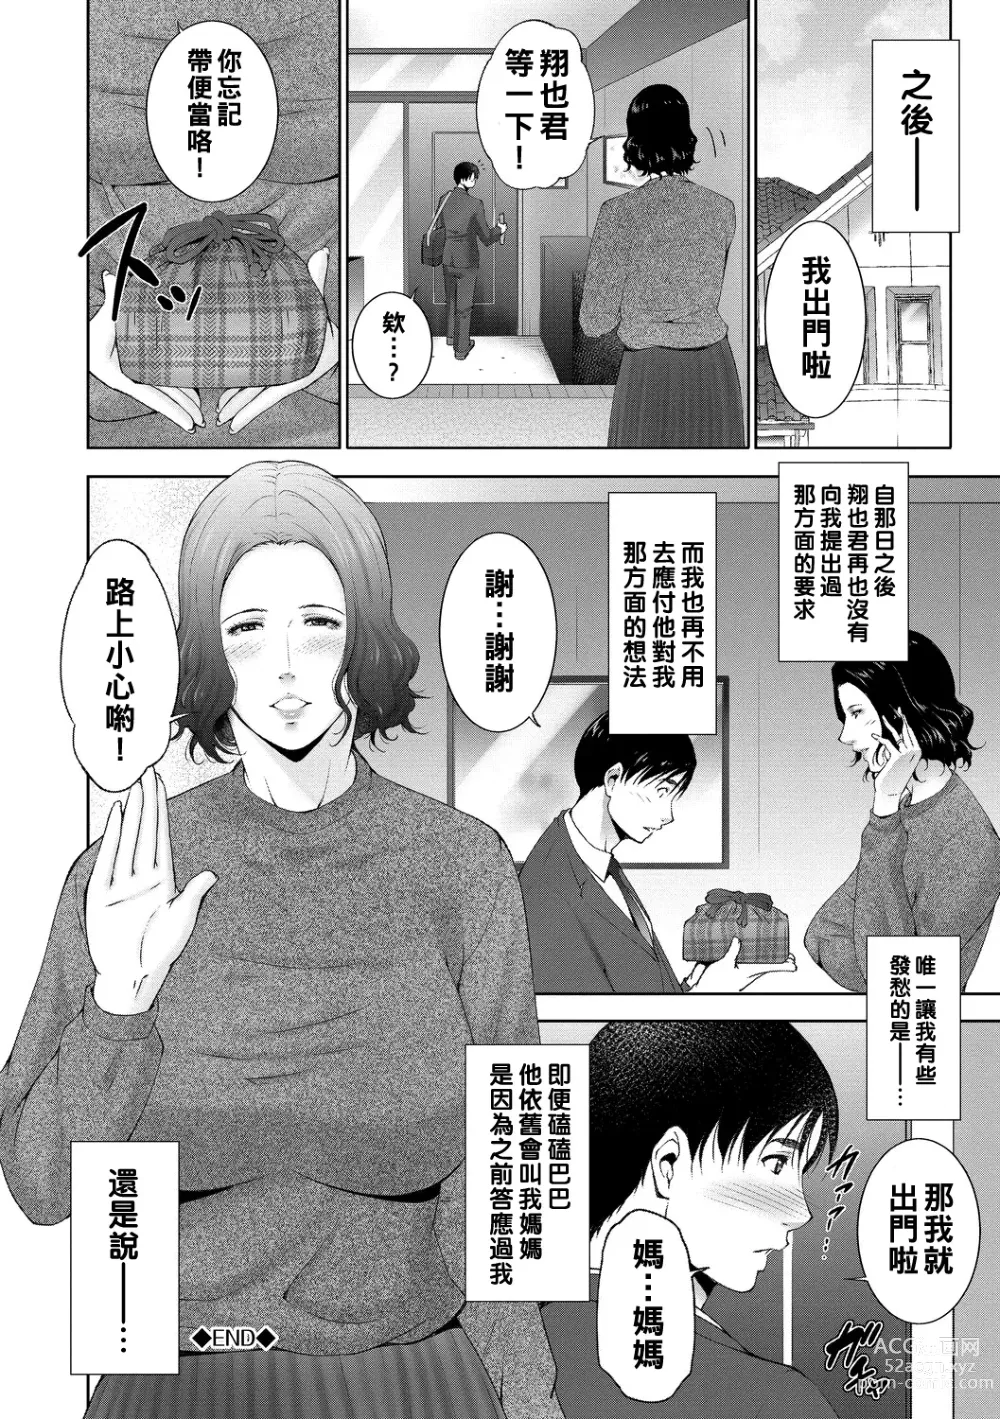 Page 24 of manga Gibosei